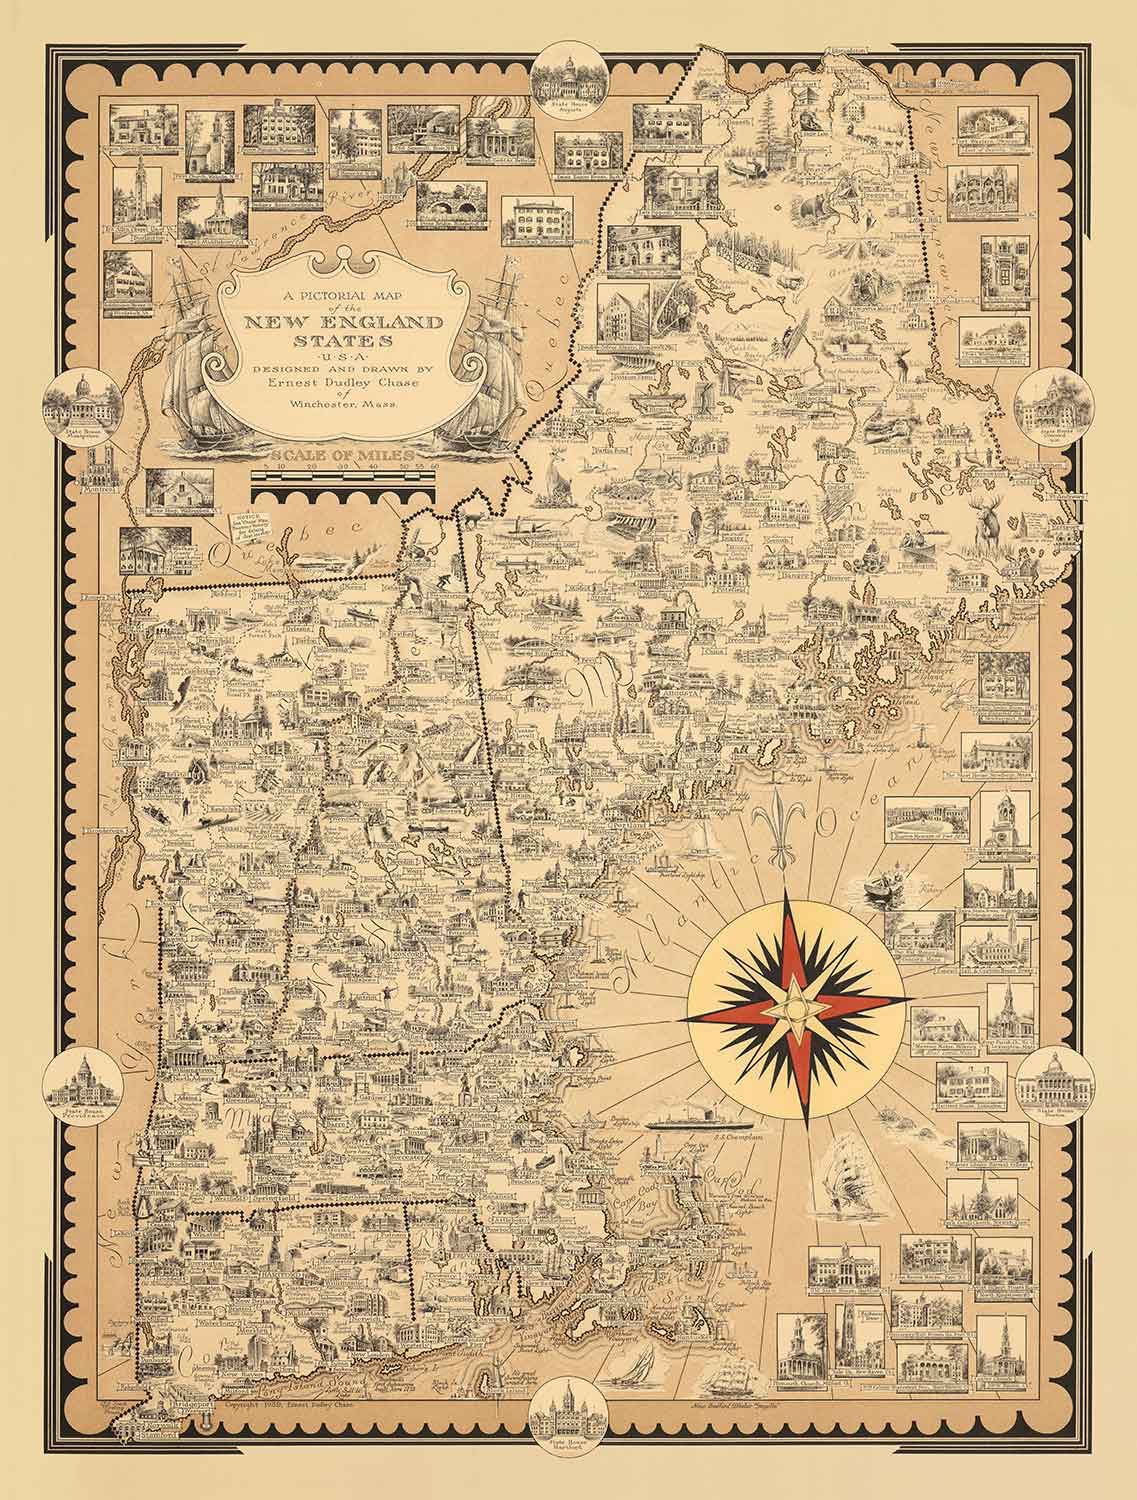 Alte Bildkarte von Neuengland, USA, 1939 von Ernest Dudley Chase - Maine, Vermont, New Hampshire, Massachusetts, Connecticut, Rhode Island